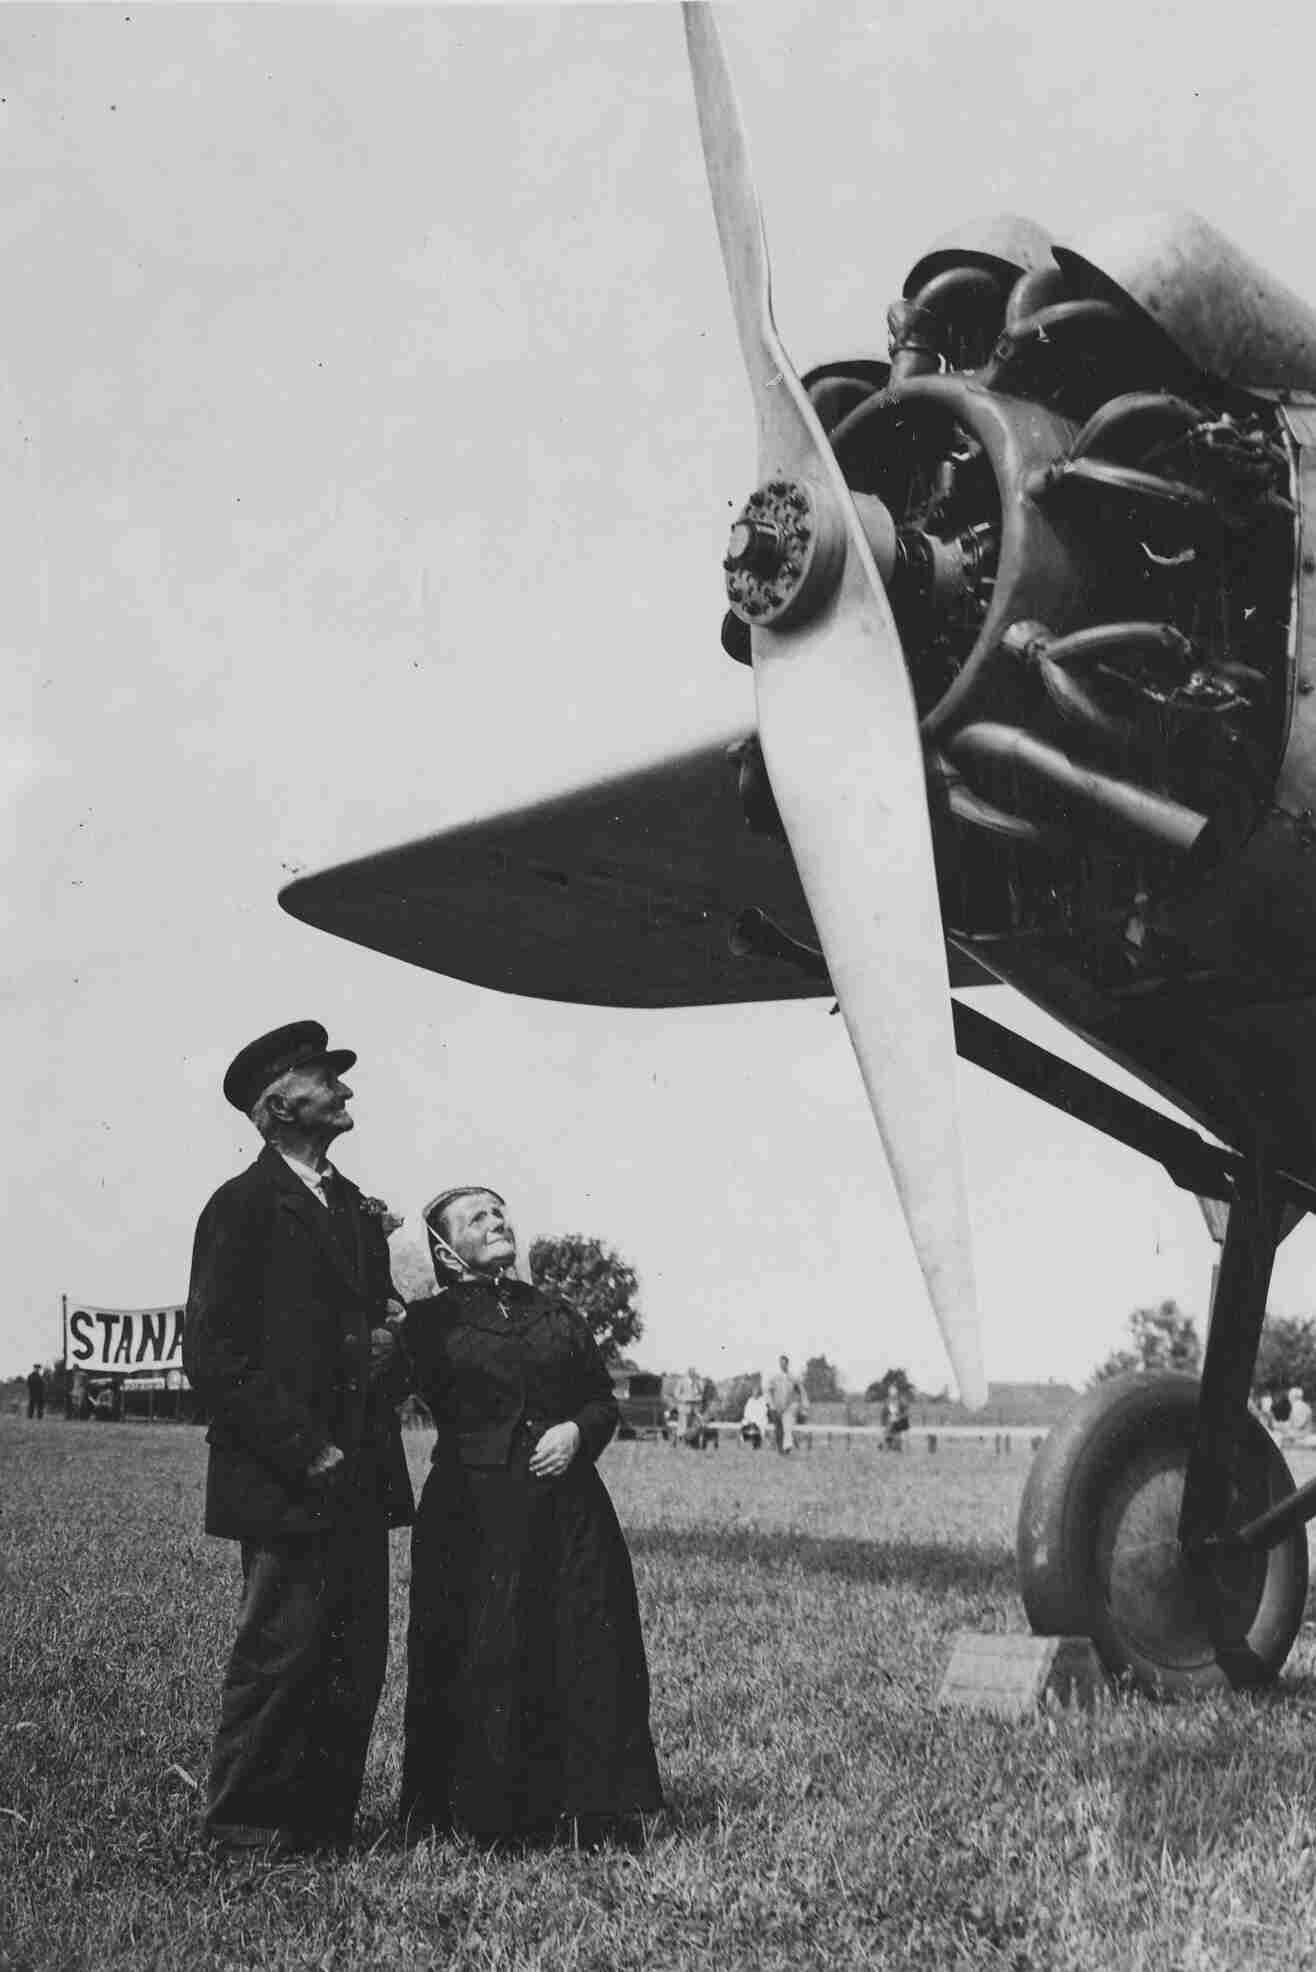 Granjeros holandeses observan un avión propulsado por un Bristol Jupiter, del que surgiría el Shvetsov M-22